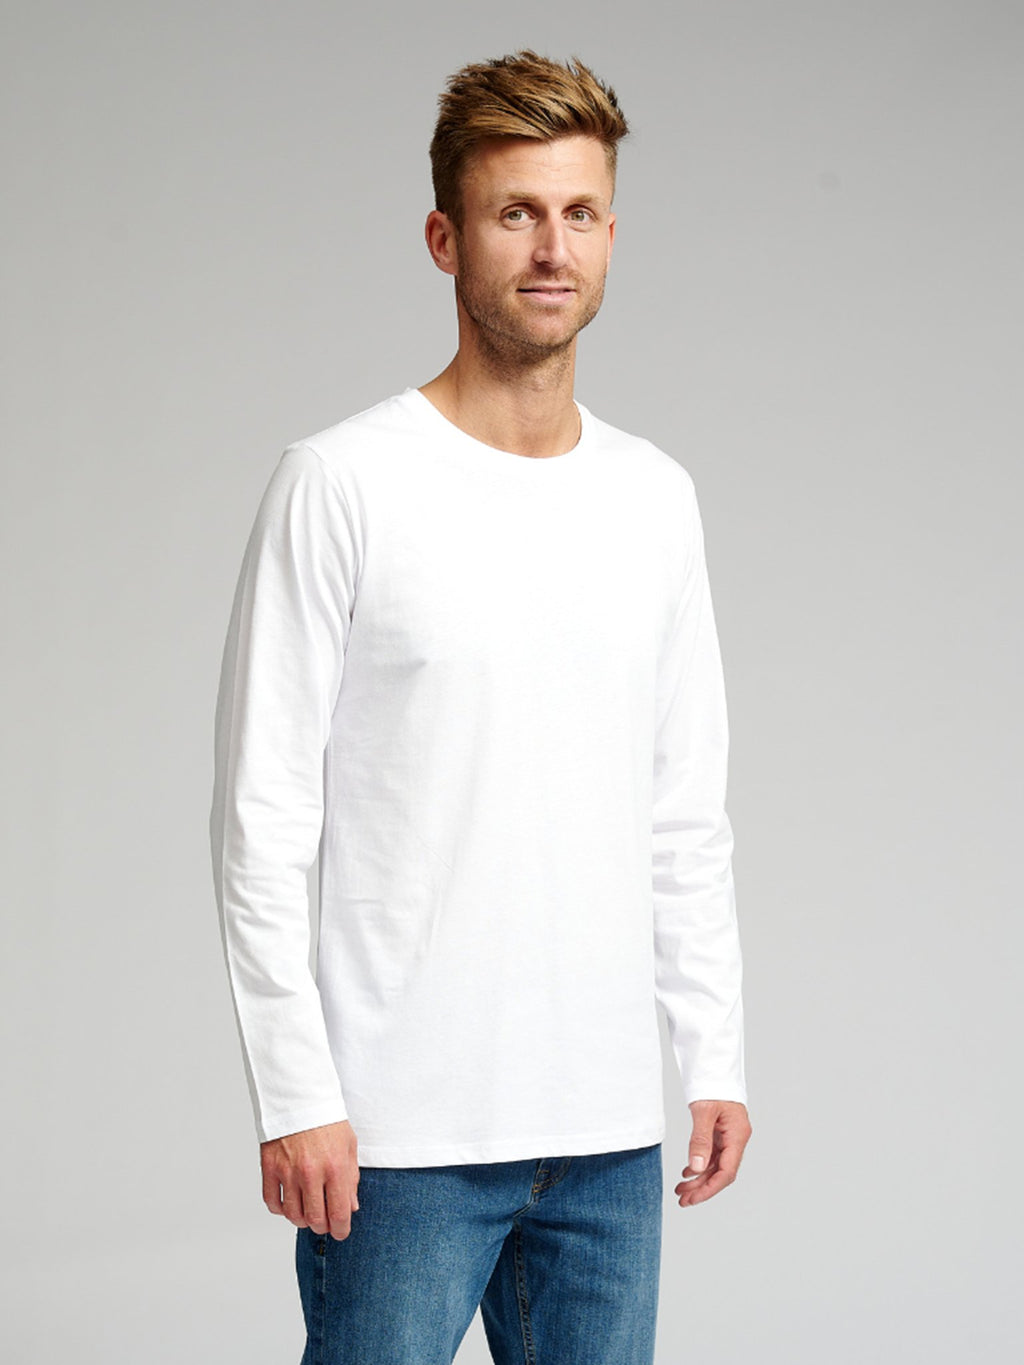 Basic Tričko s dlhým rukávom-biele